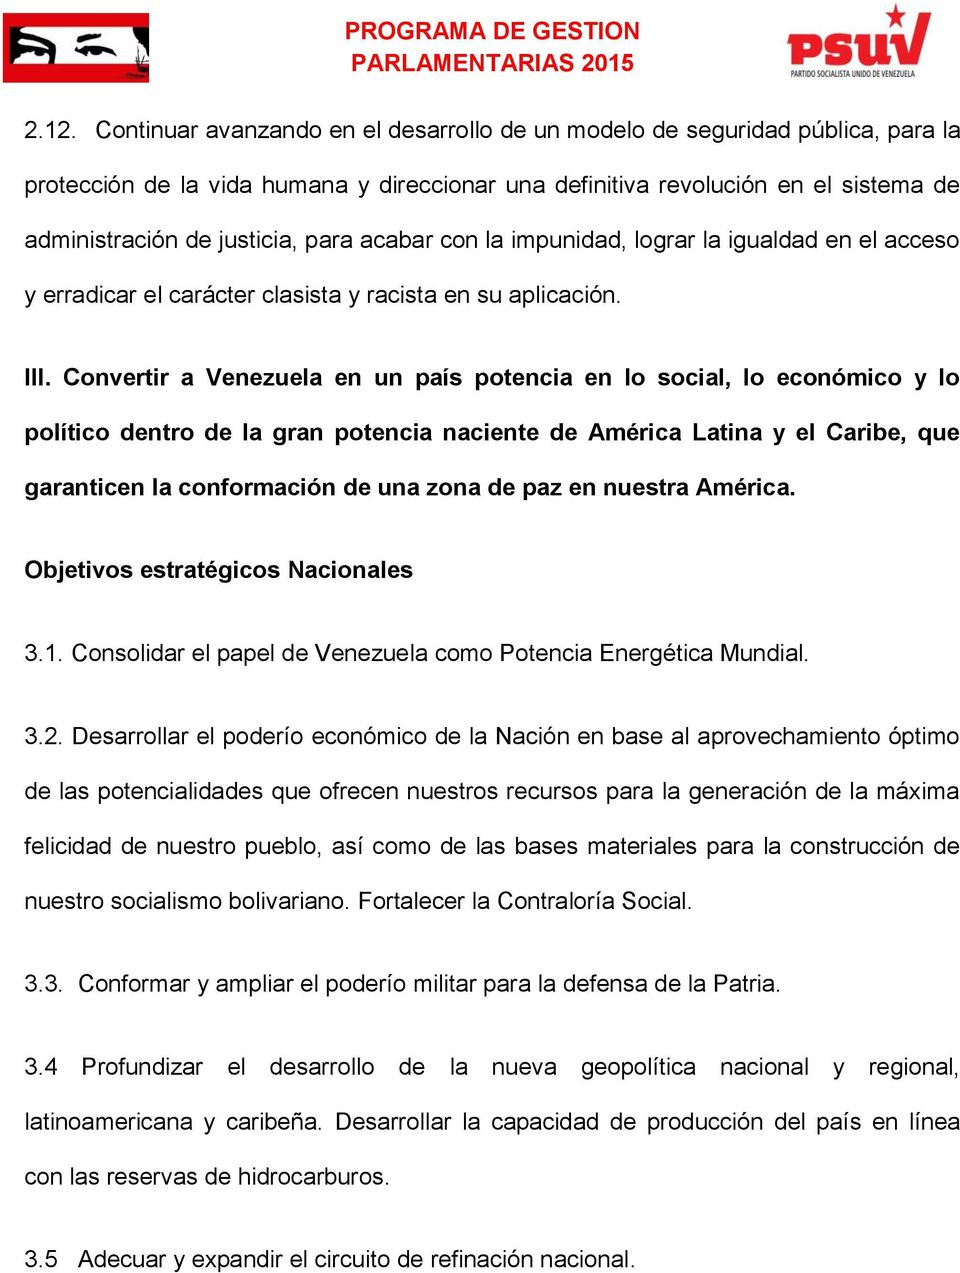 Convertir a Venezuela en un país potencia en lo social, lo económico y lo político dentro de la gran potencia naciente de América Latina y el Caribe, que garanticen la conformación de una zona de paz